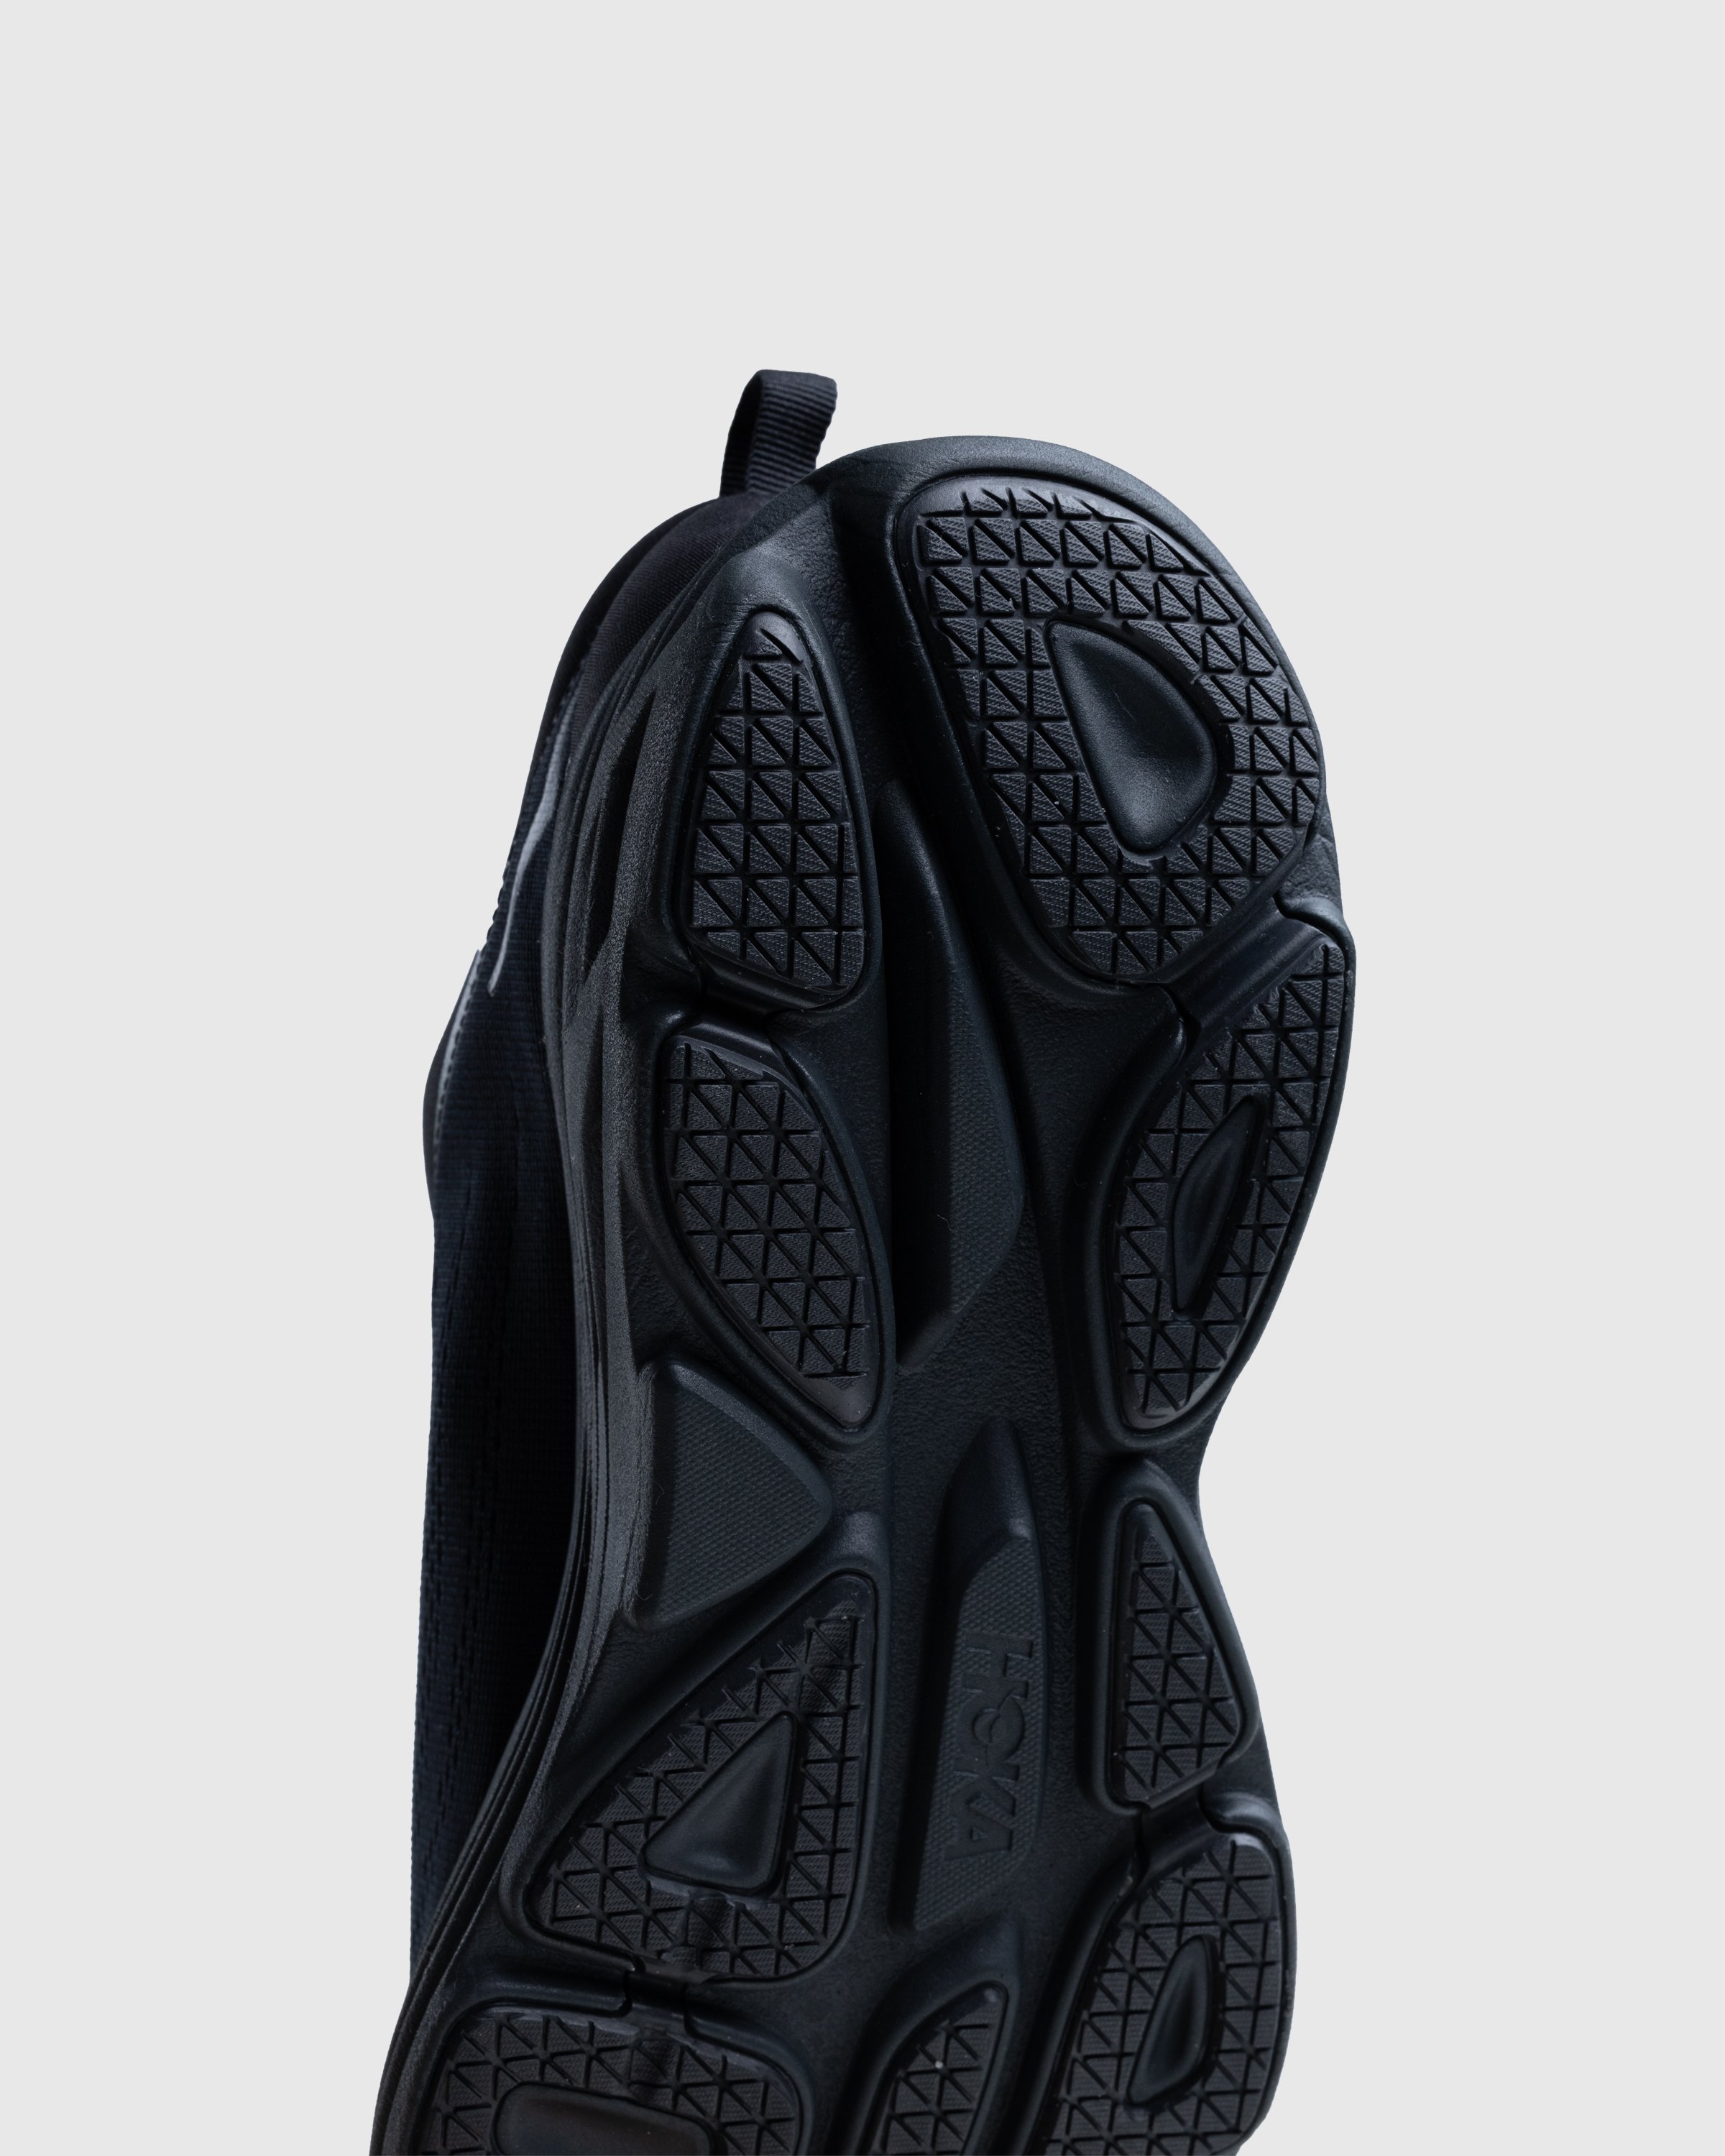 HOKA - Bondi 8 Black/Black - Footwear - Black - Image 5